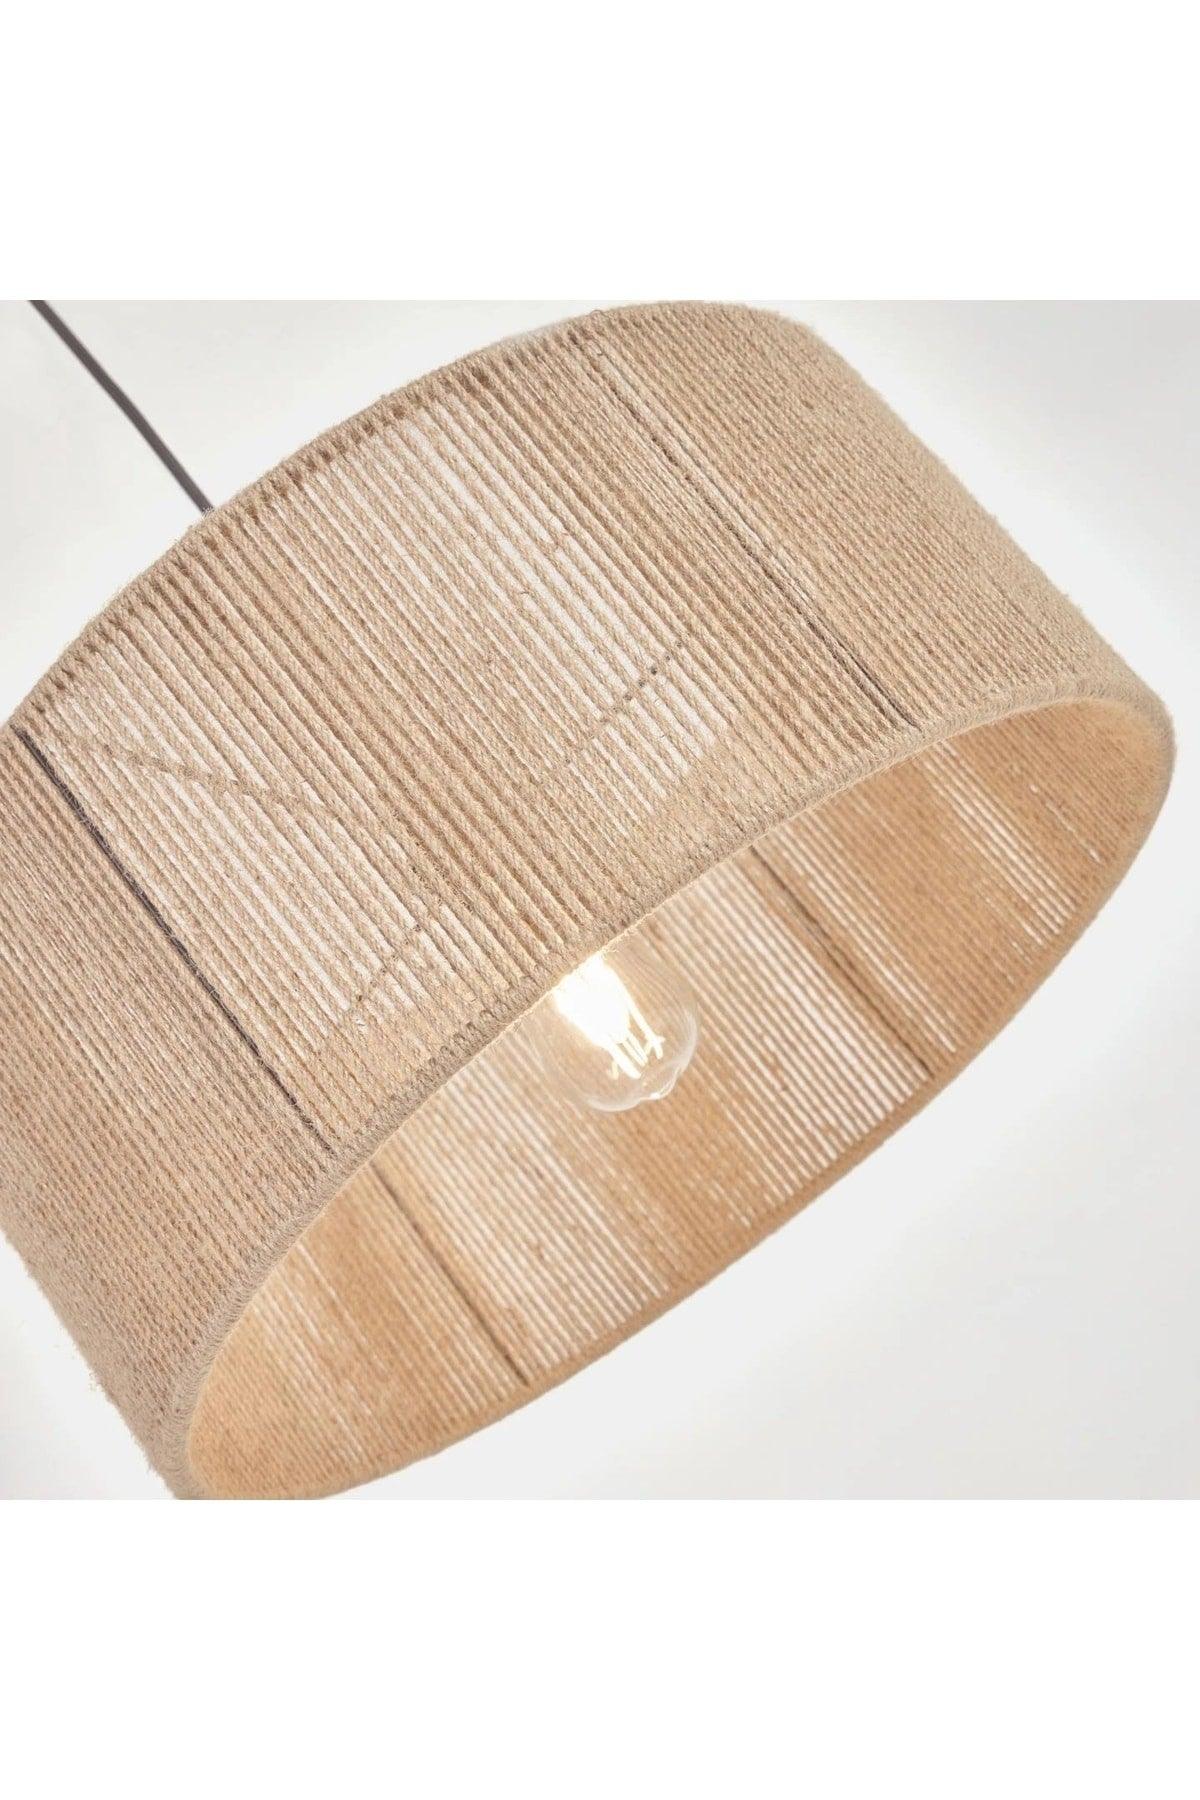 Decorative Pendant Lamp Chandelier Floor Lamp Head Rope - Swordslife